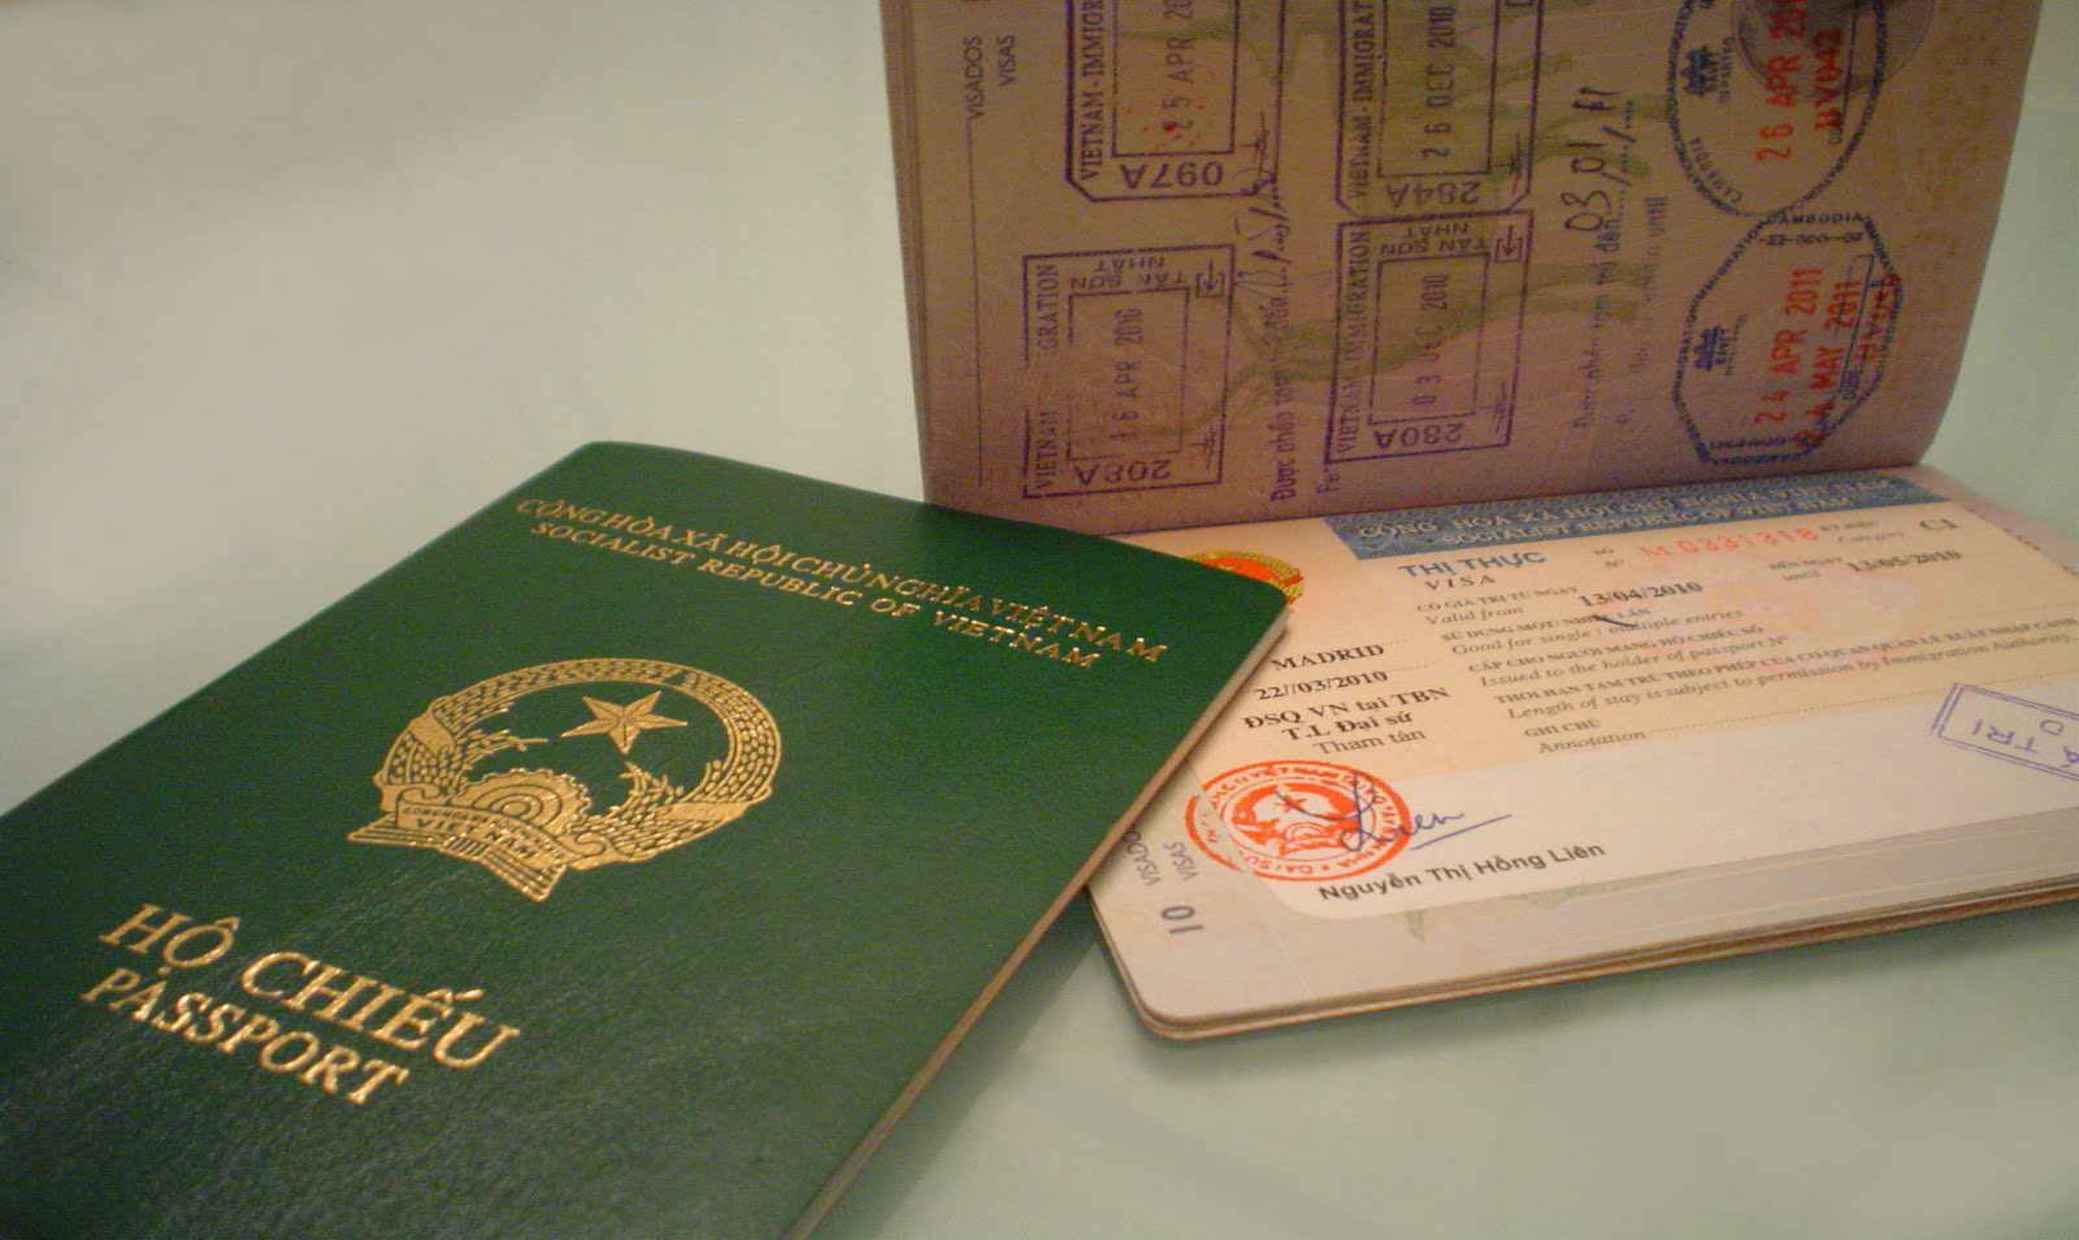 Đơn xin nhập quốc tịch Việt Nam - Hướng dẫn thủ tục, hồ sơ